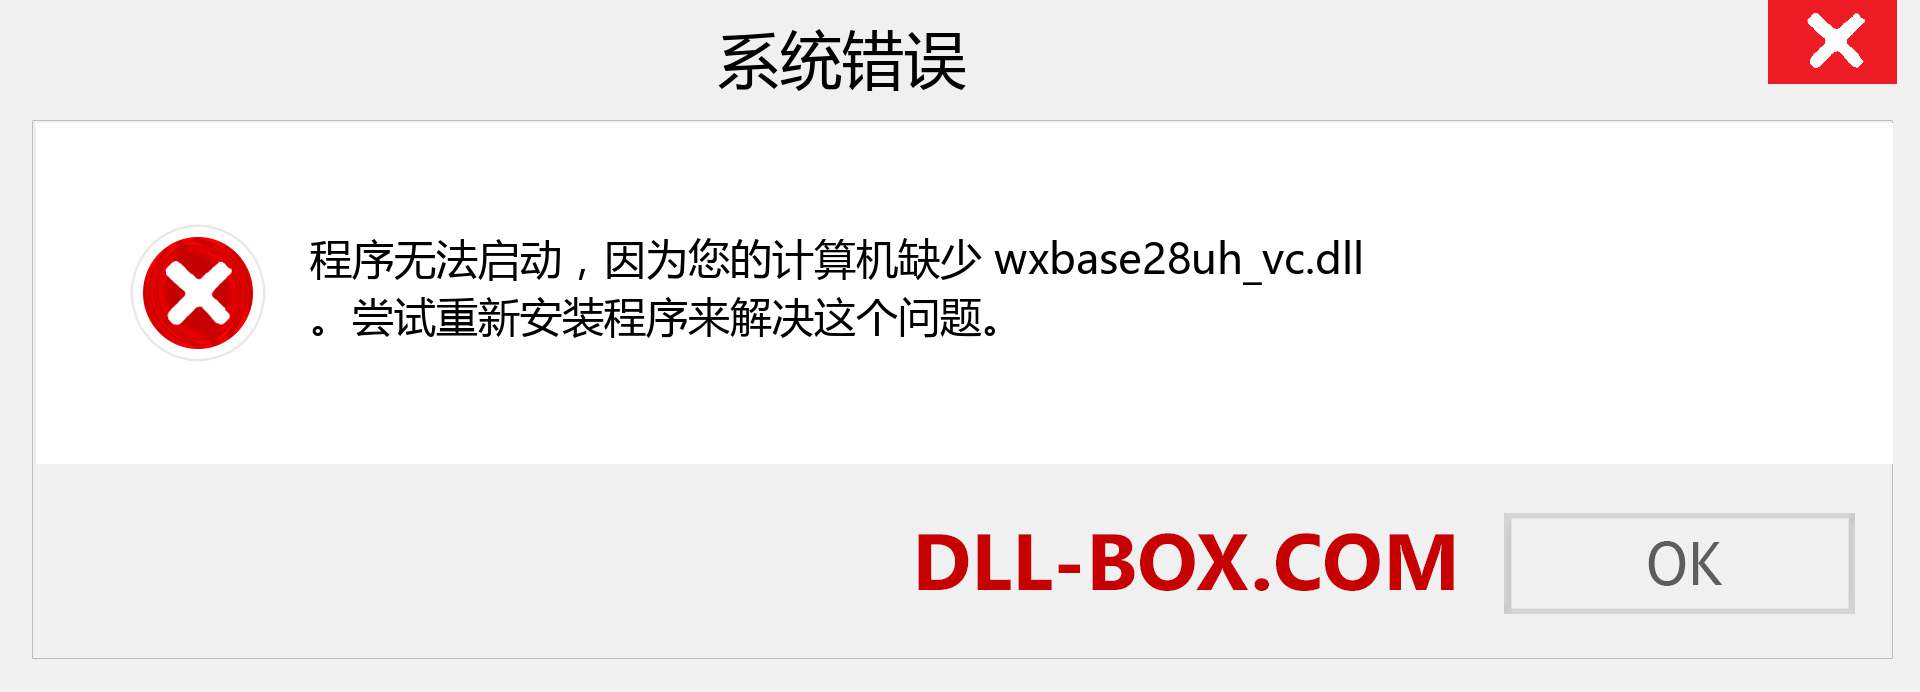 wxbase28uh_vc.dll 文件丢失？。 适用于 Windows 7、8、10 的下载 - 修复 Windows、照片、图像上的 wxbase28uh_vc dll 丢失错误